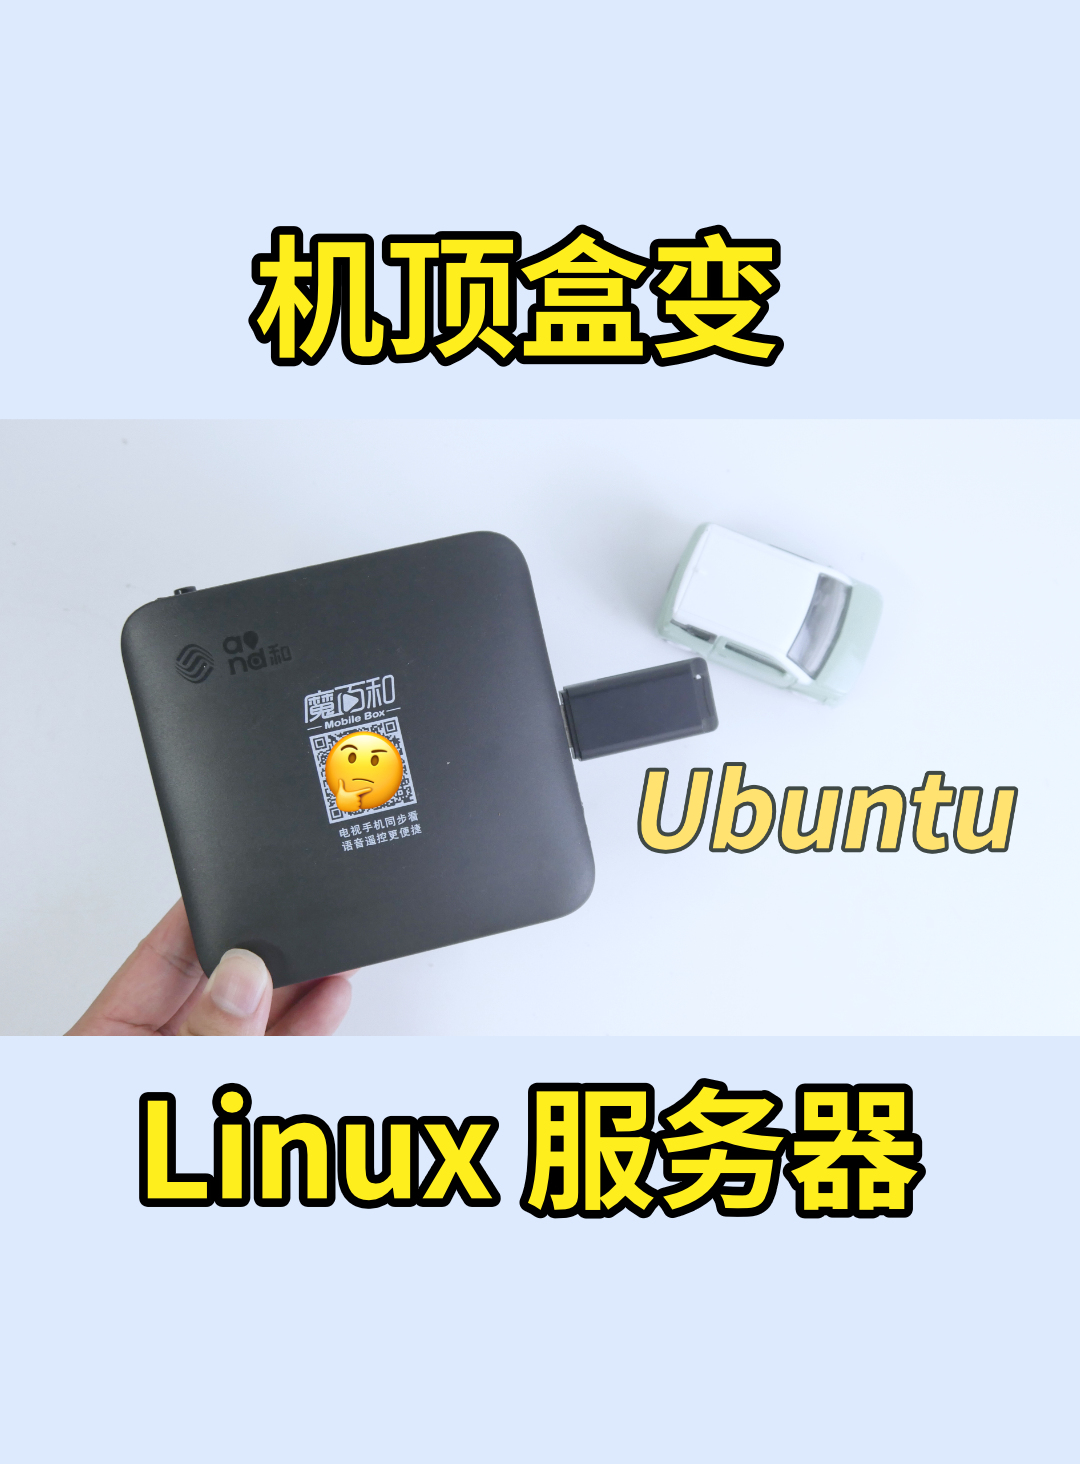 又把机顶盒刷为 Ubuntu 当 Linux 服务器，新款魔百盒 CM311-1A-YST 刷 armbian